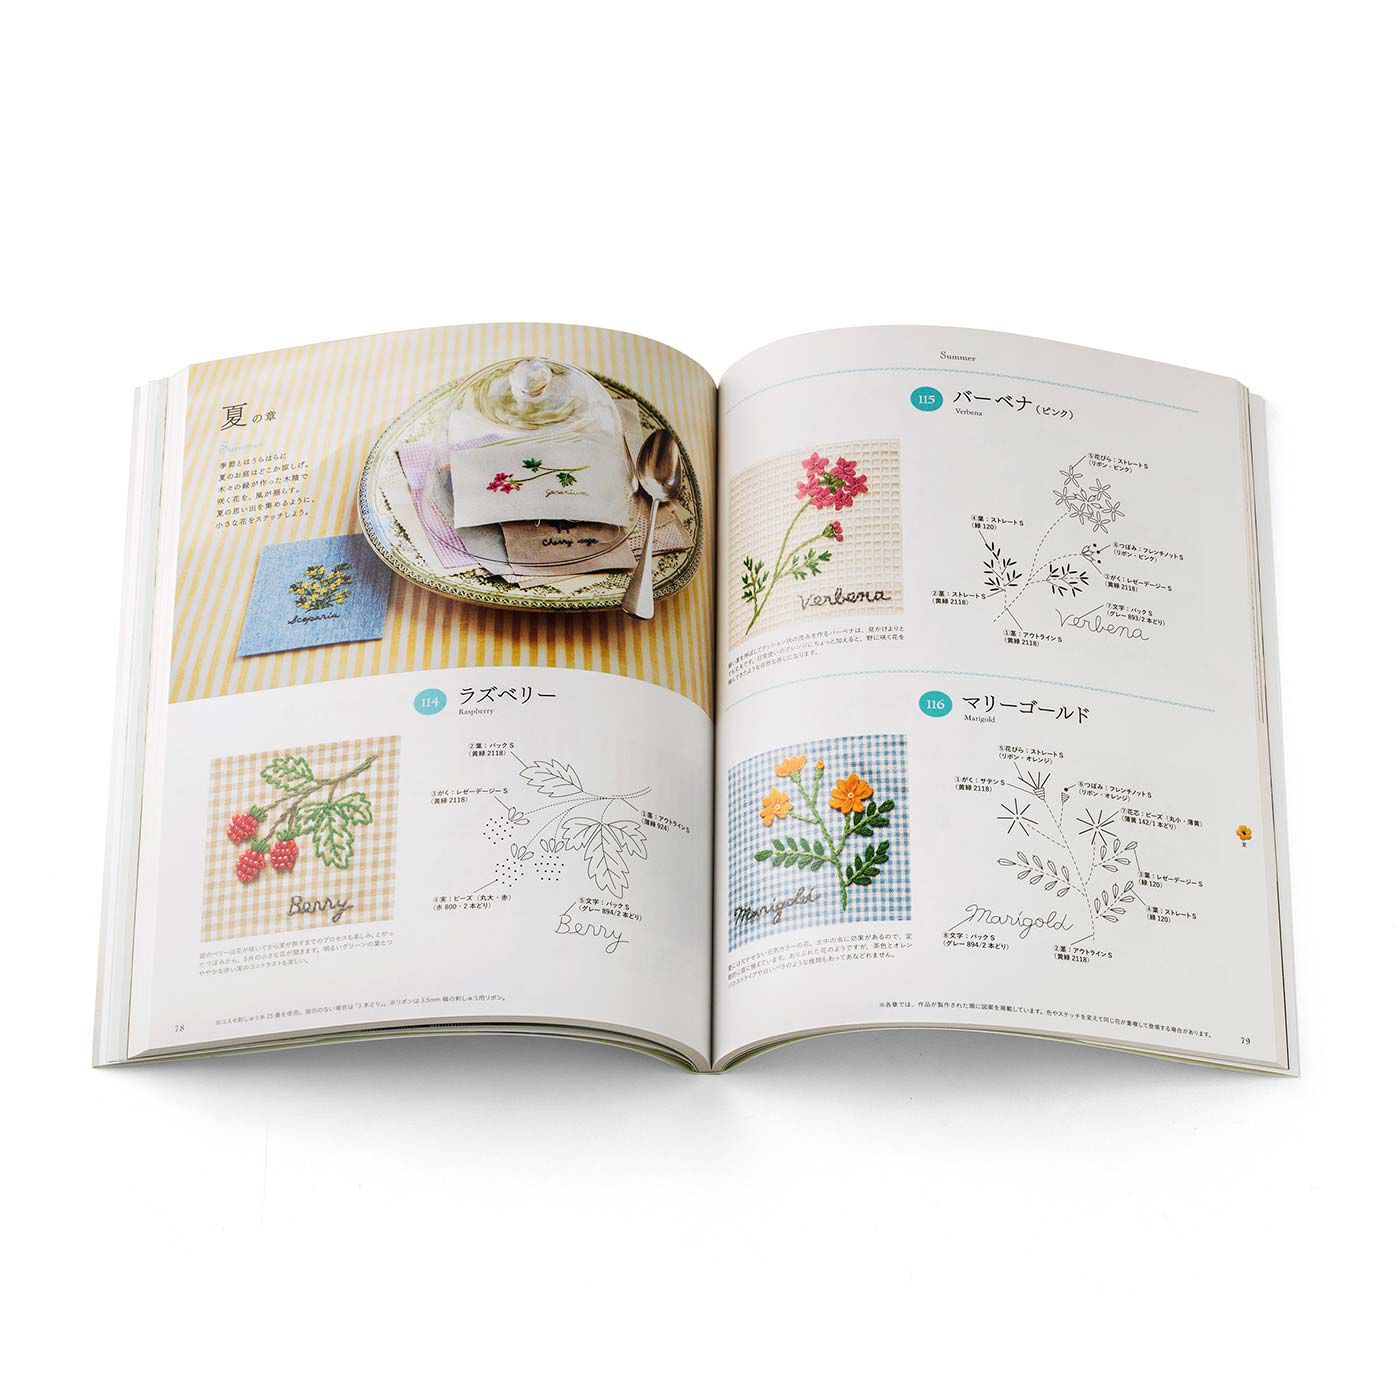 クチュリエ|季節のお花で暮らしに彩りを 187の刺繍デザイン 青木 和子さんのお庭から|1年を6つの章に分けて、季節の草花を見本写真と実物大の図案で紹介しています。